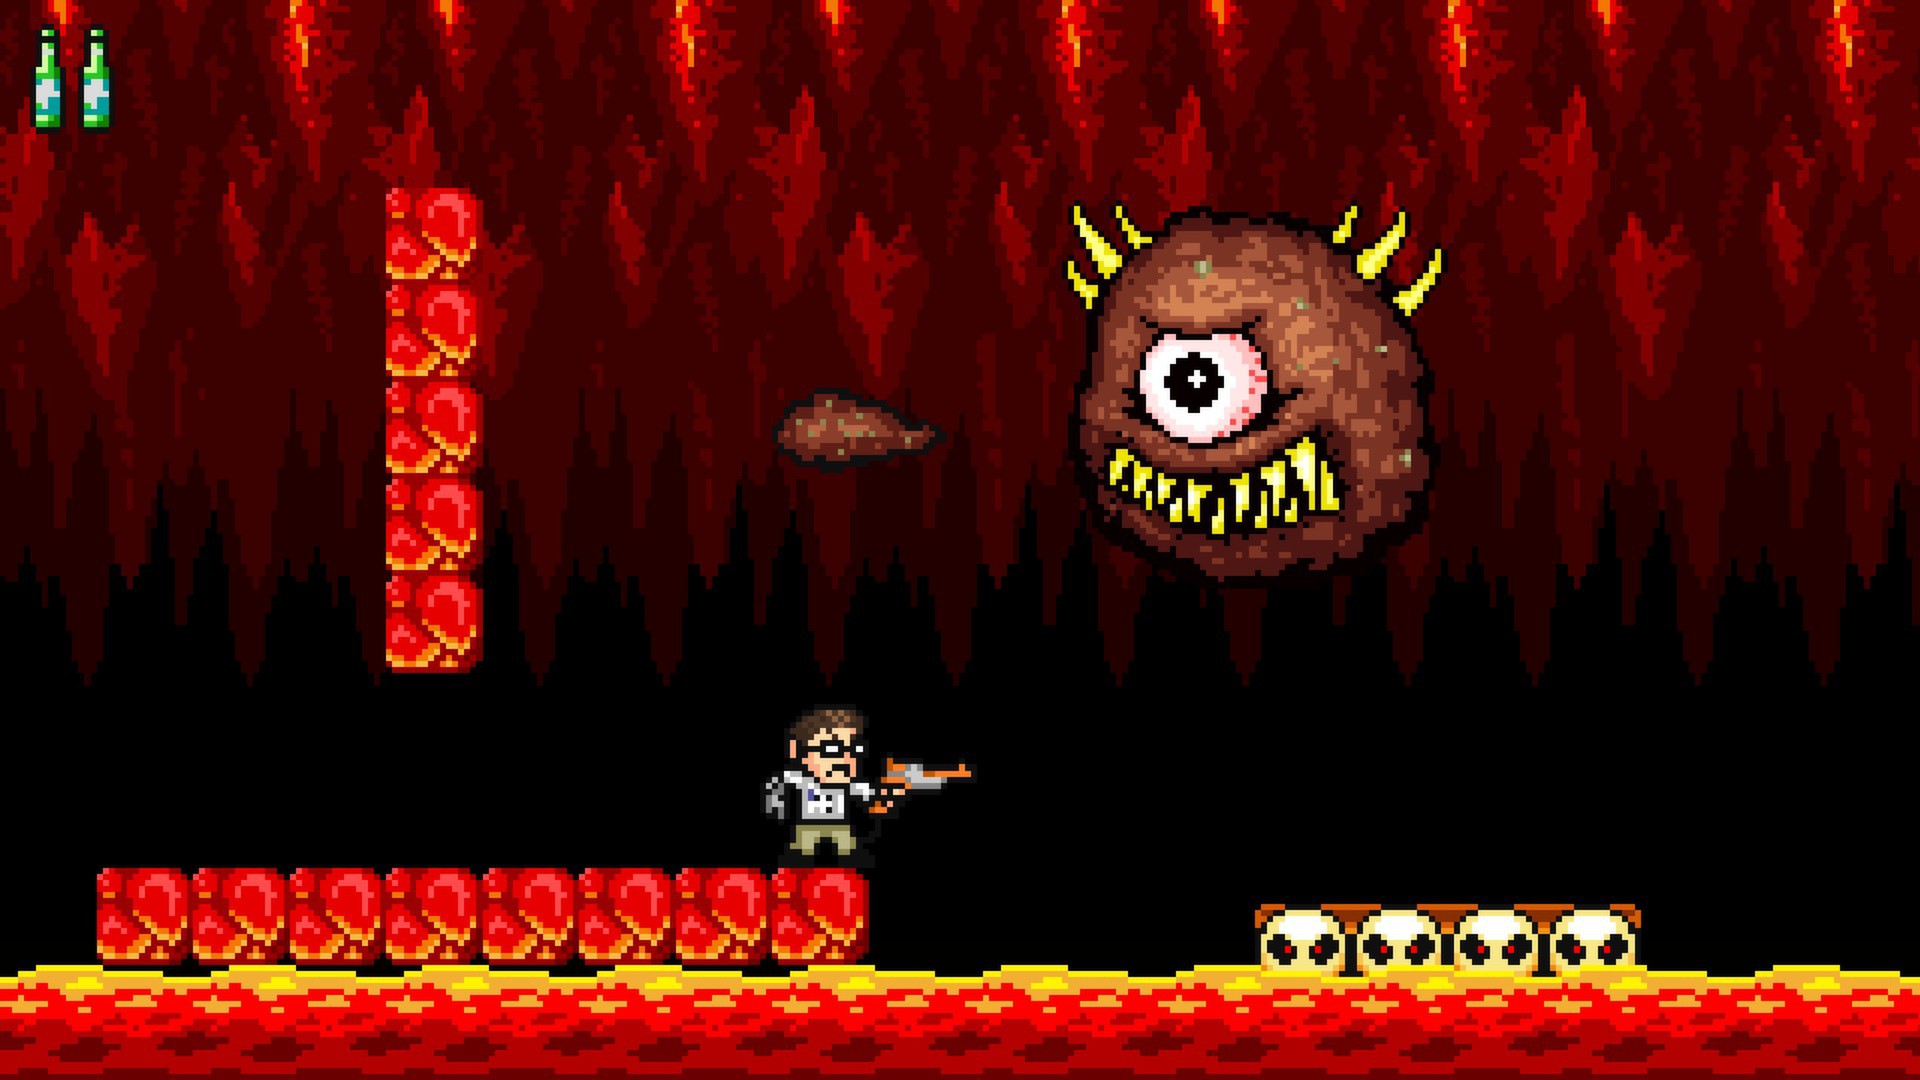 Angry Video Game Nerd Adventures - Metacritic